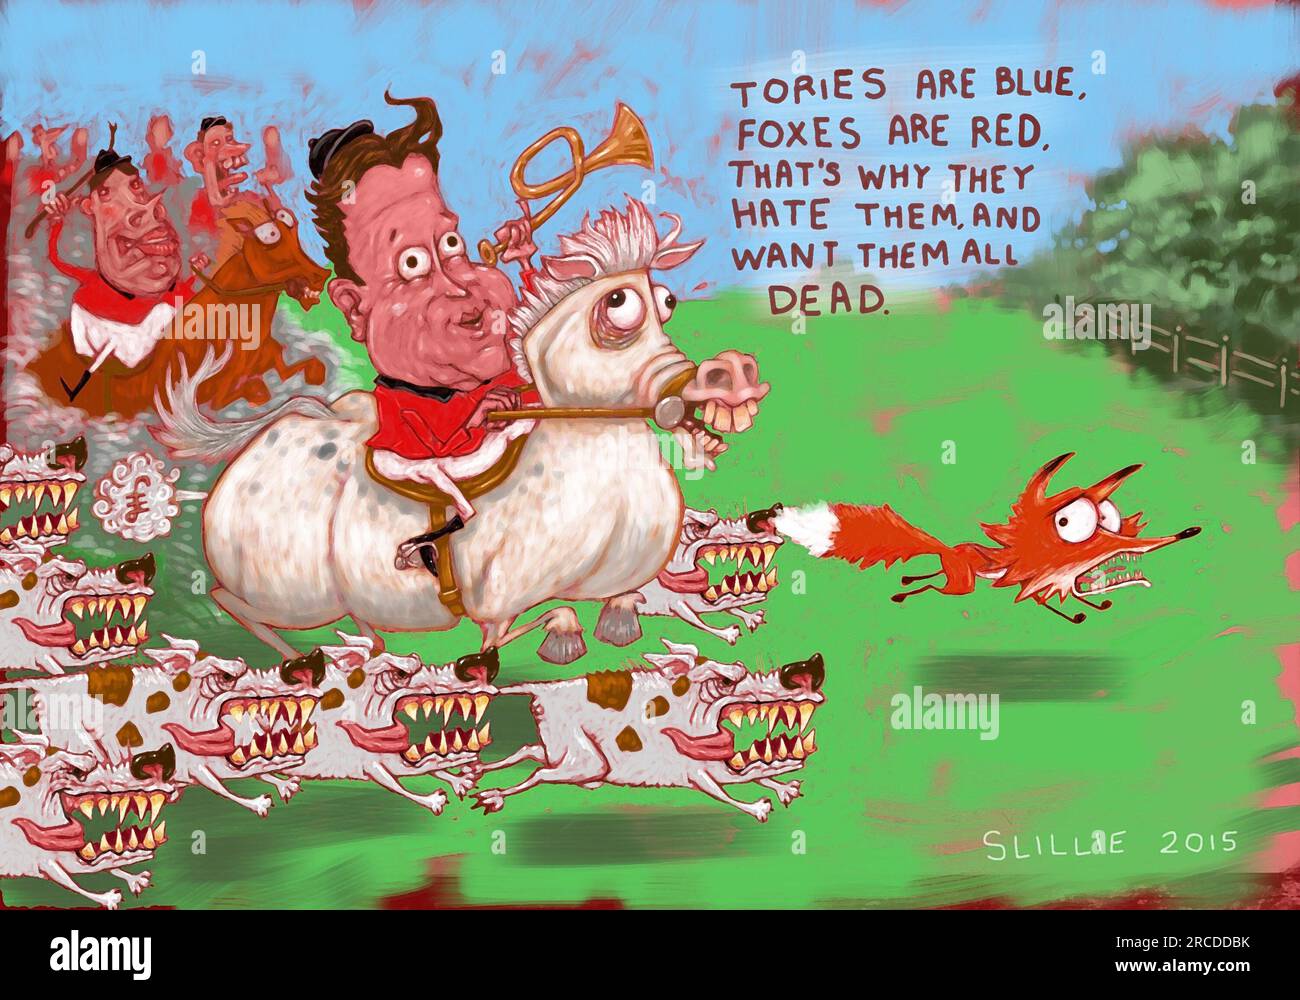 Cacciatori d'arte satirici a cavallo guidati da master of Hounds Concept: I Tories sono blu, le volpi sono rosse, ecco perché le odiano e le vogliono tutte morte Foto Stock